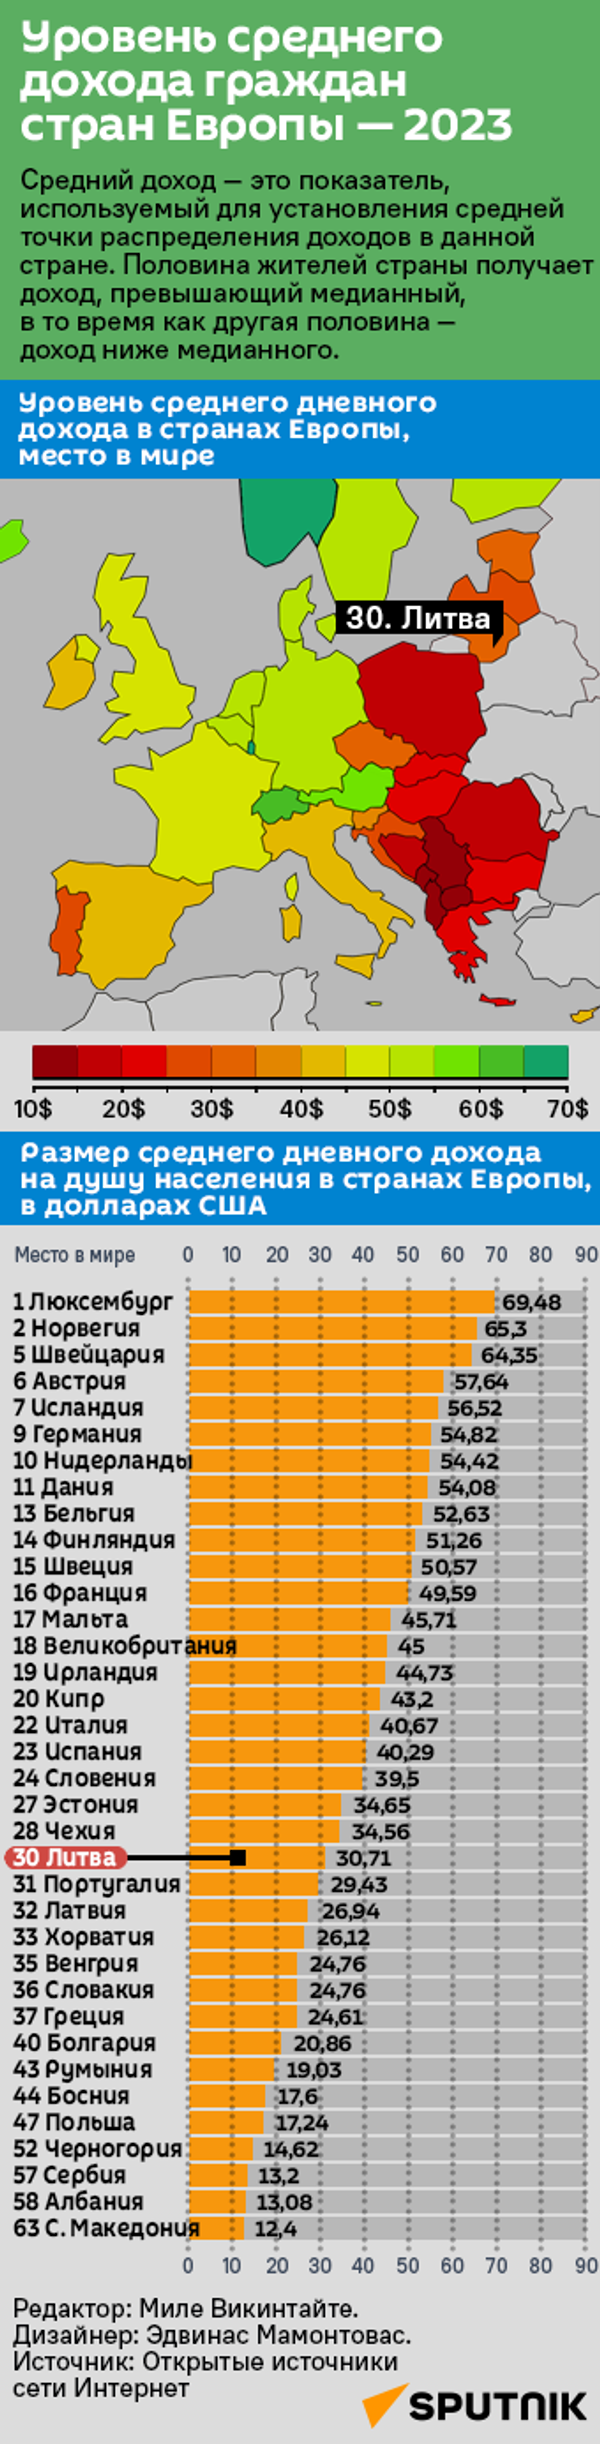 Уровень среднего дохода граждан стран Европы — 2023 - Sputnik Литва